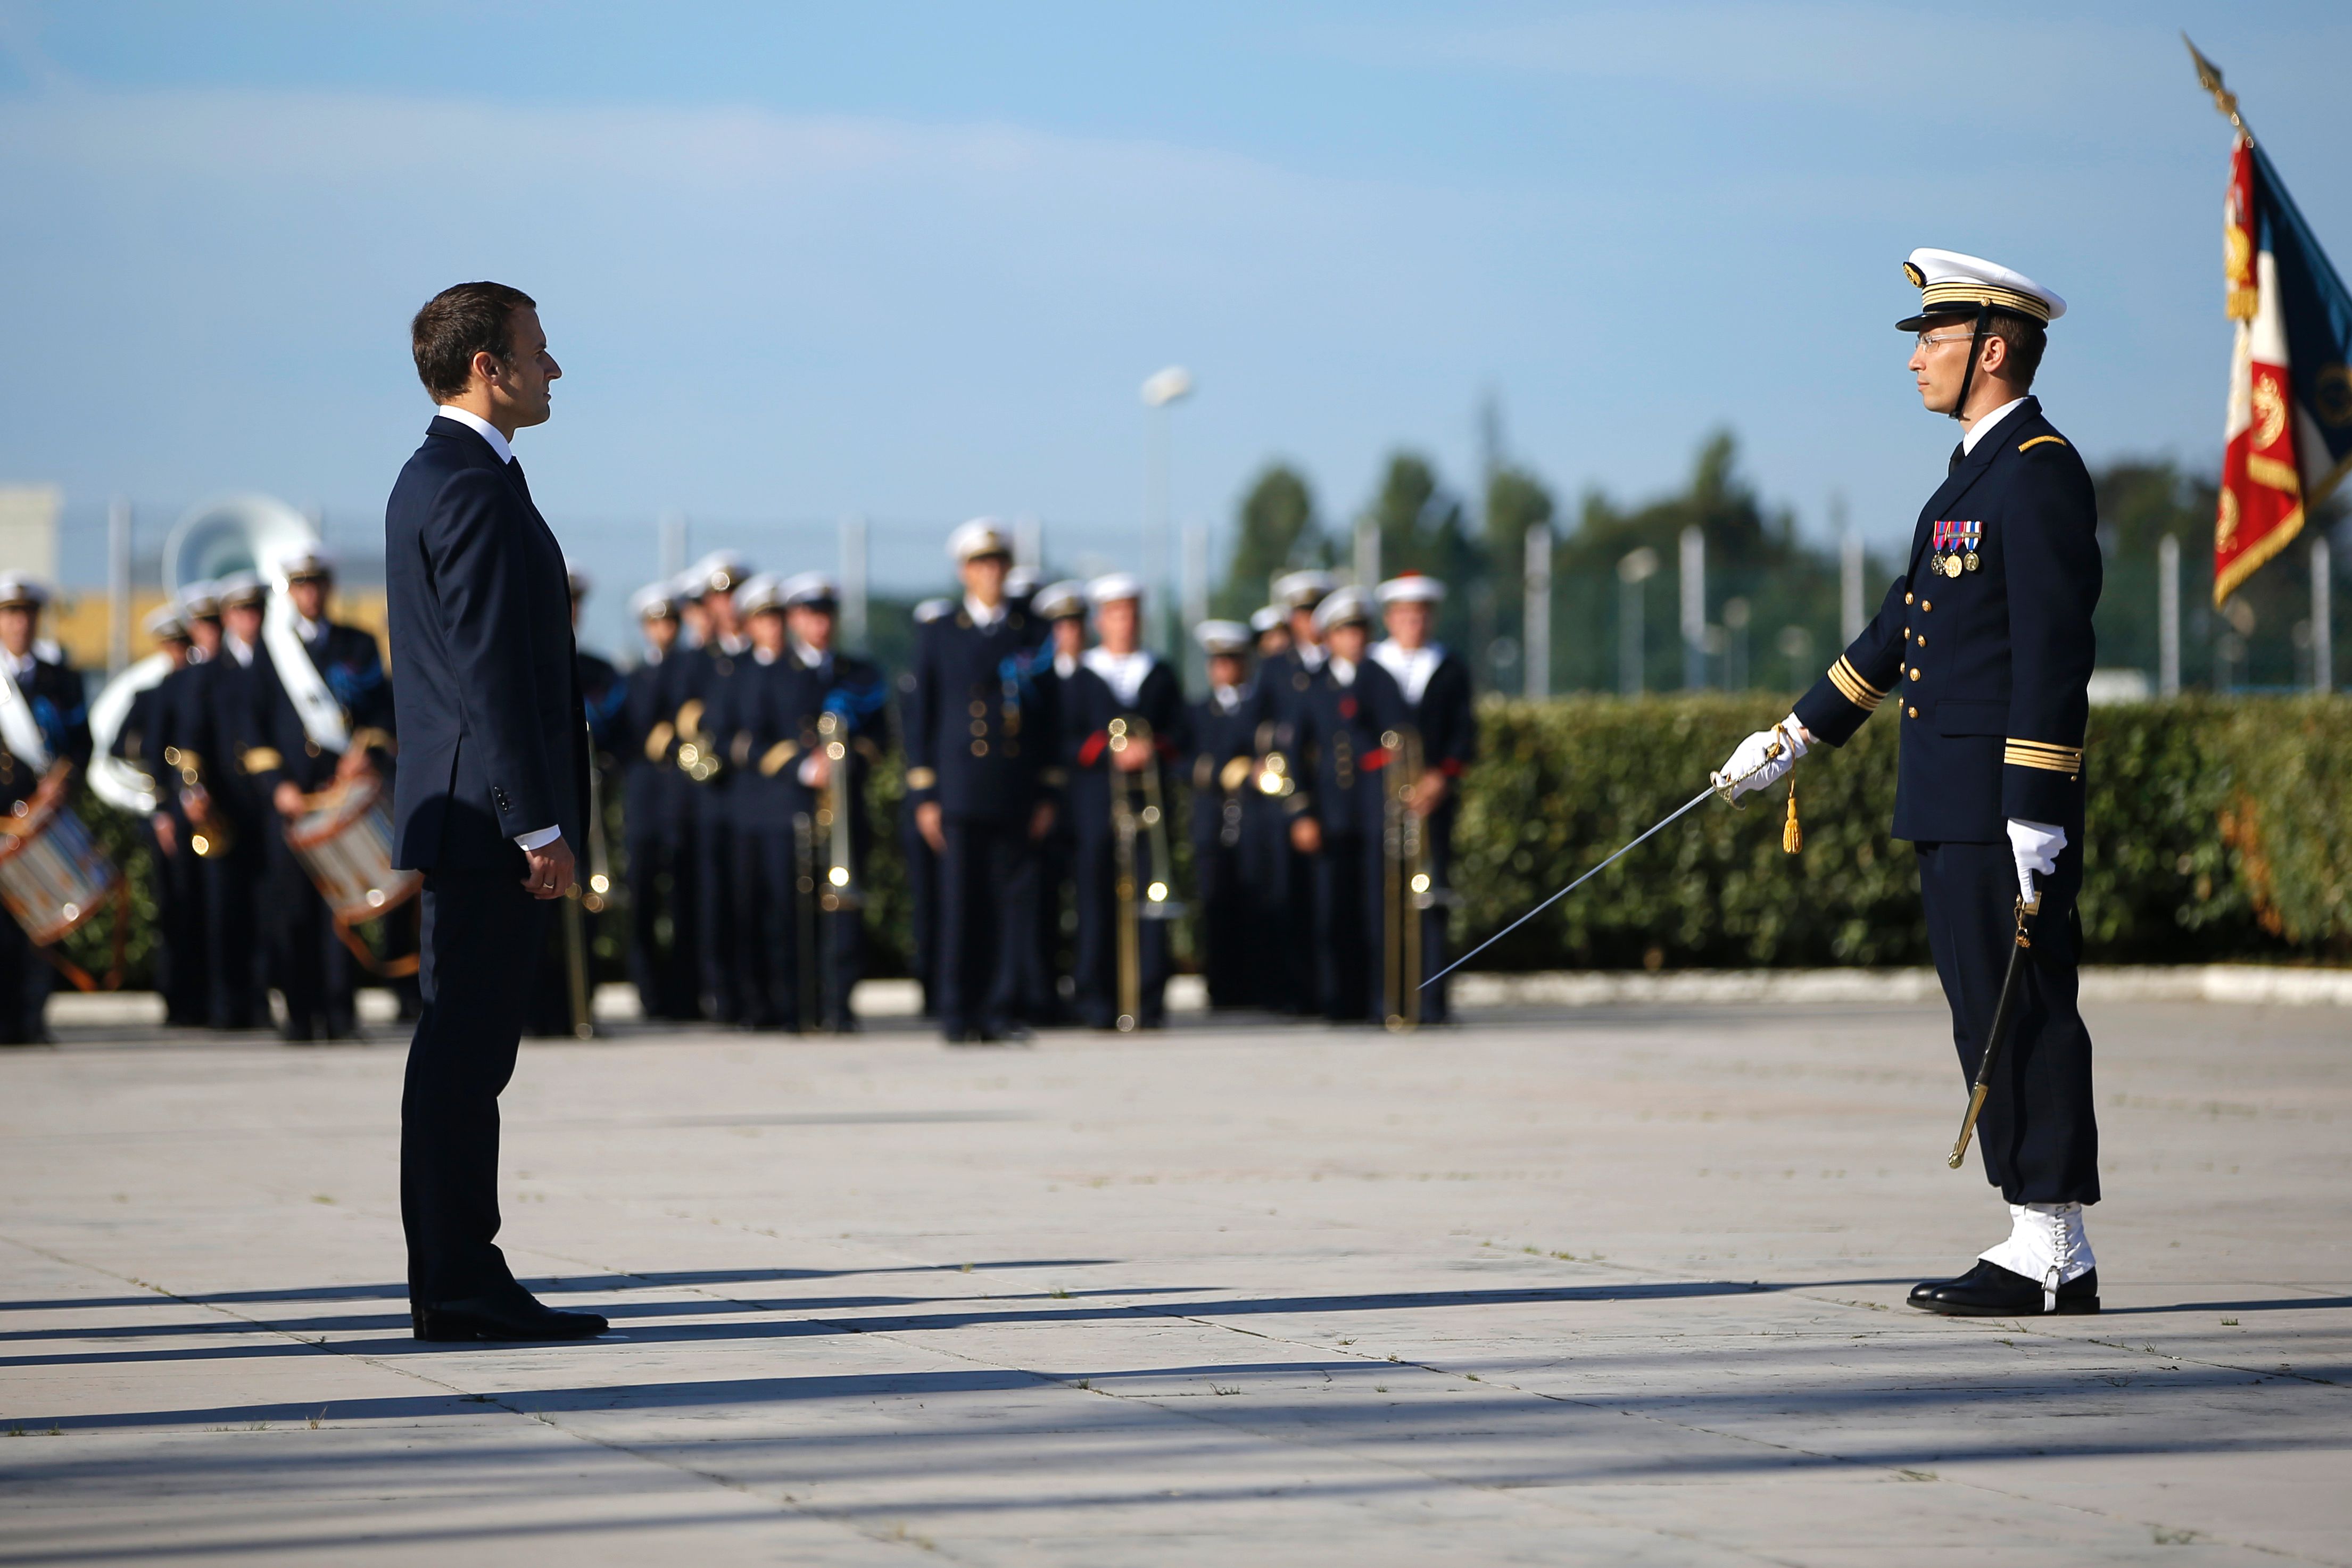 مرسم استعراض الرئيس الفرنسى للقوات بقاعدة بحرية